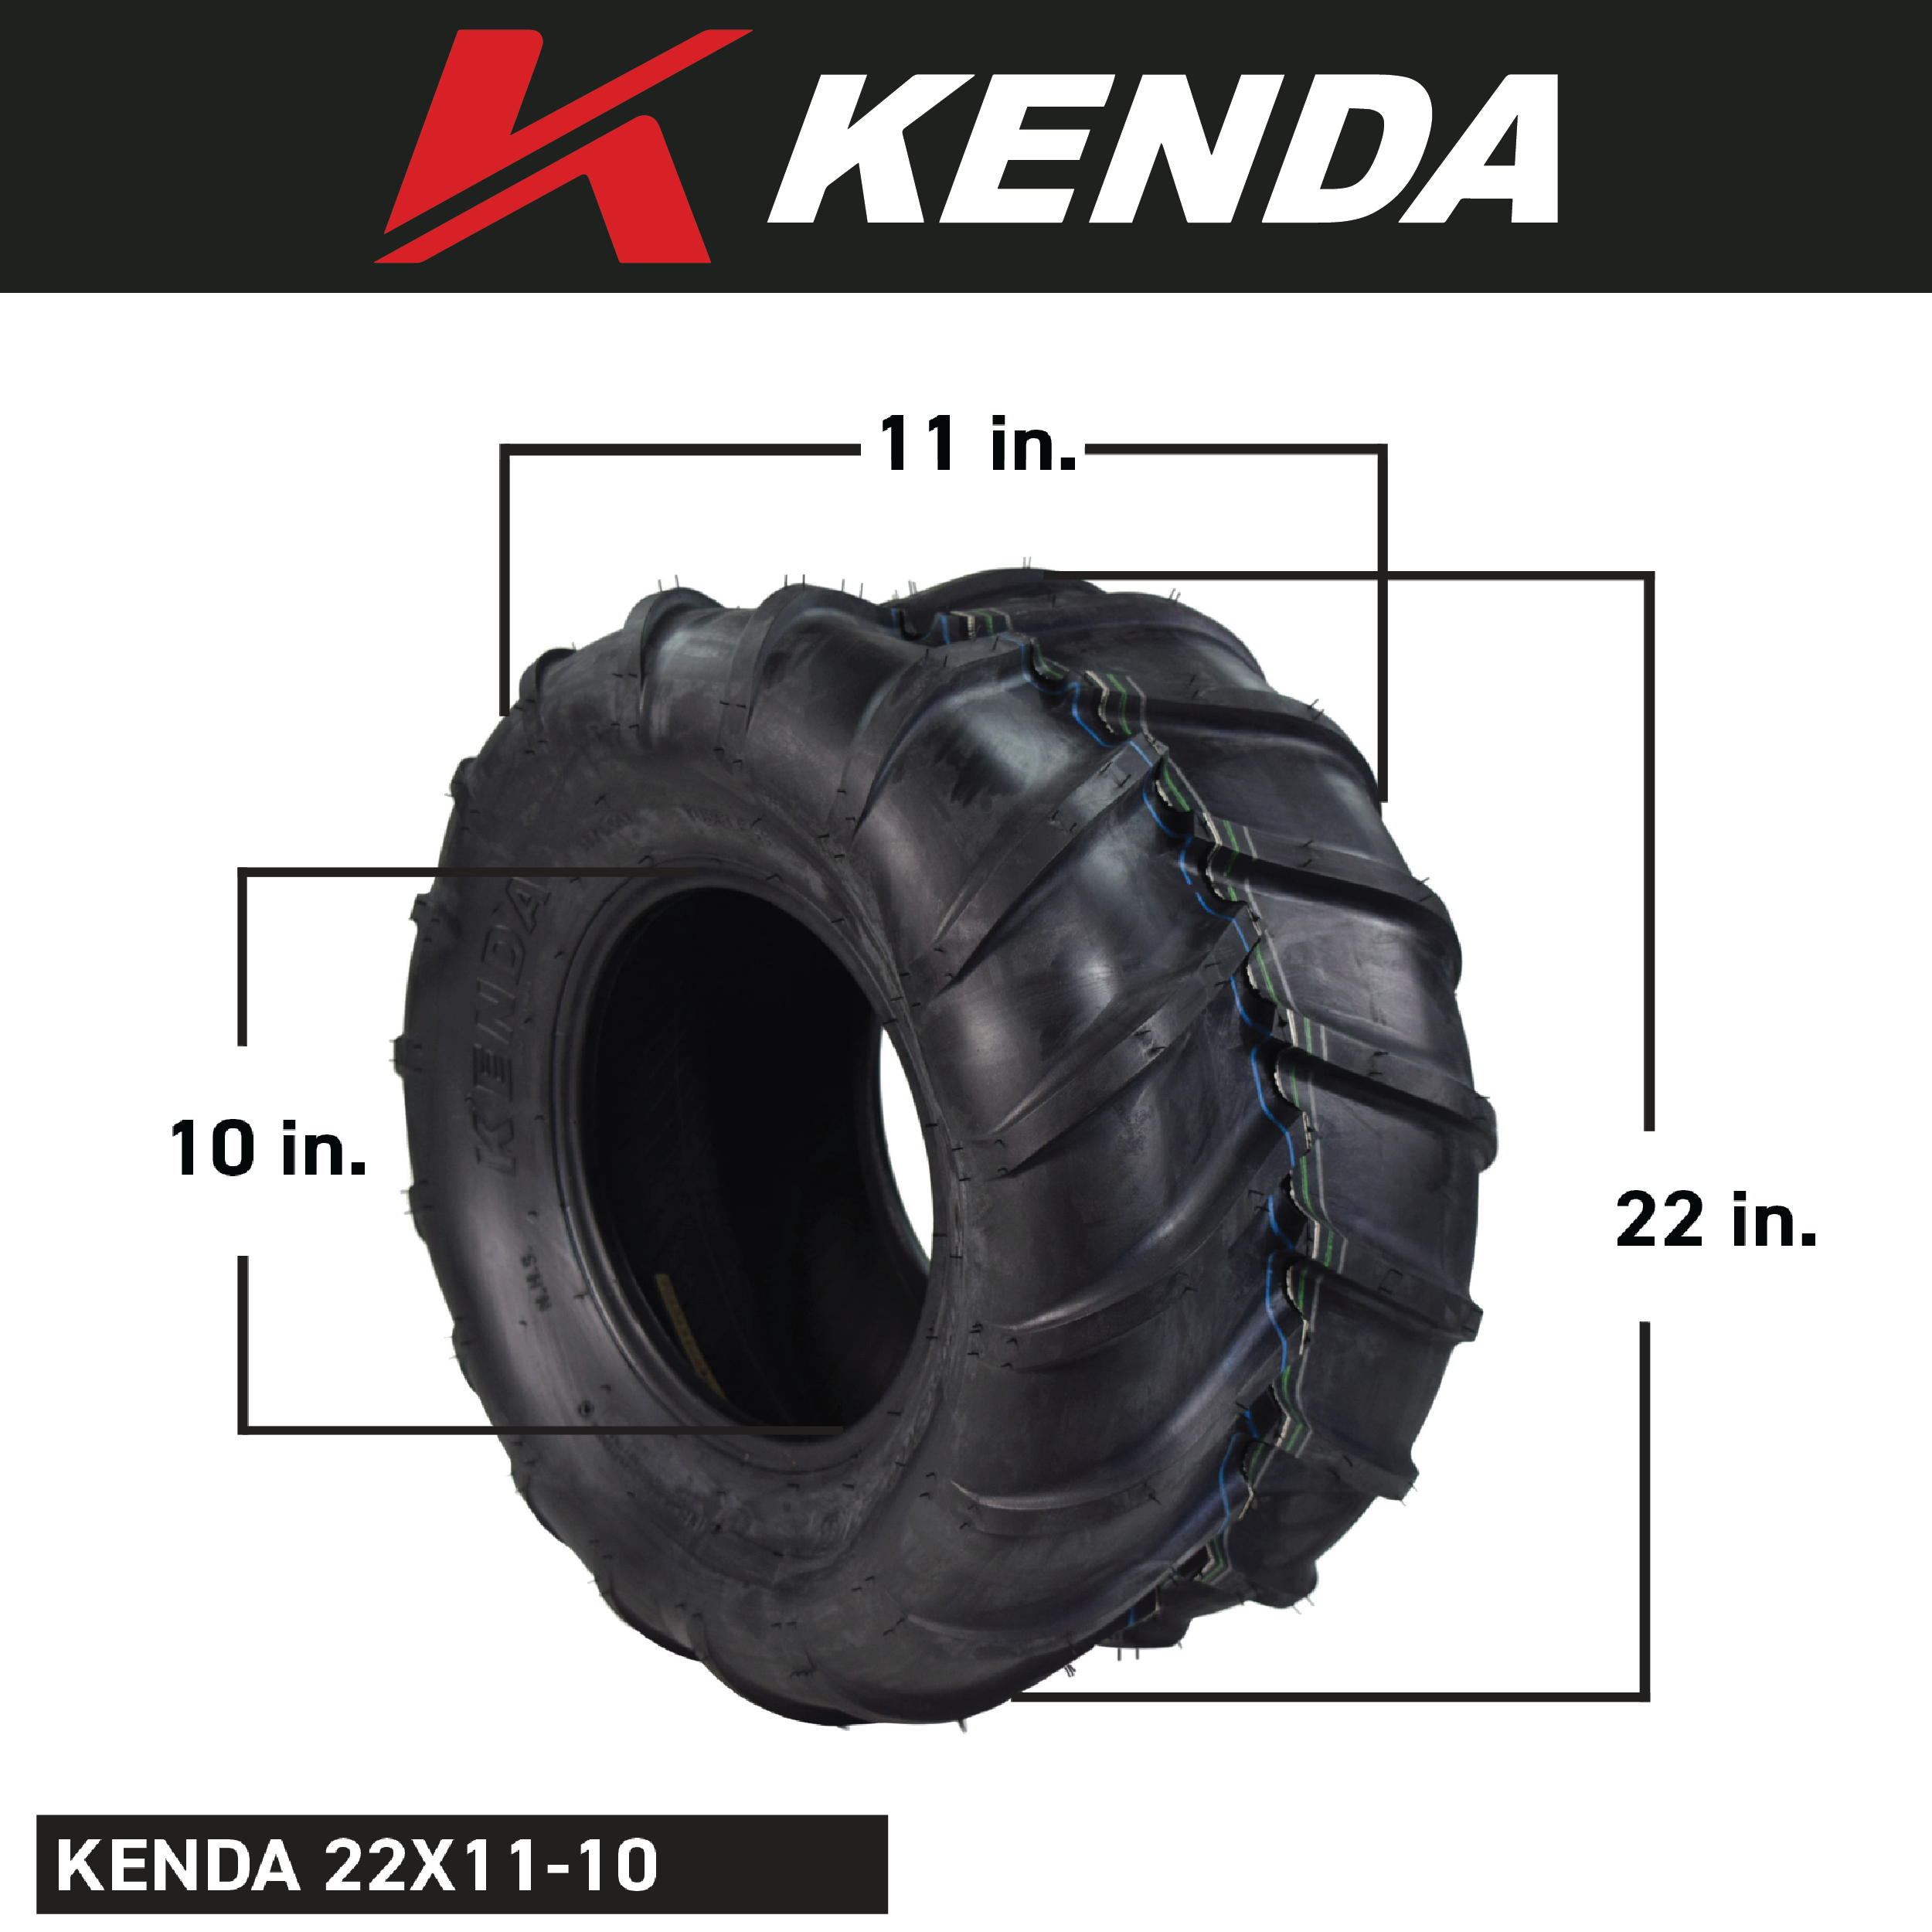 Kenda K472 22x11-10 Lawn and Garden Grasshopper Rear Tire Bottle opener keychain